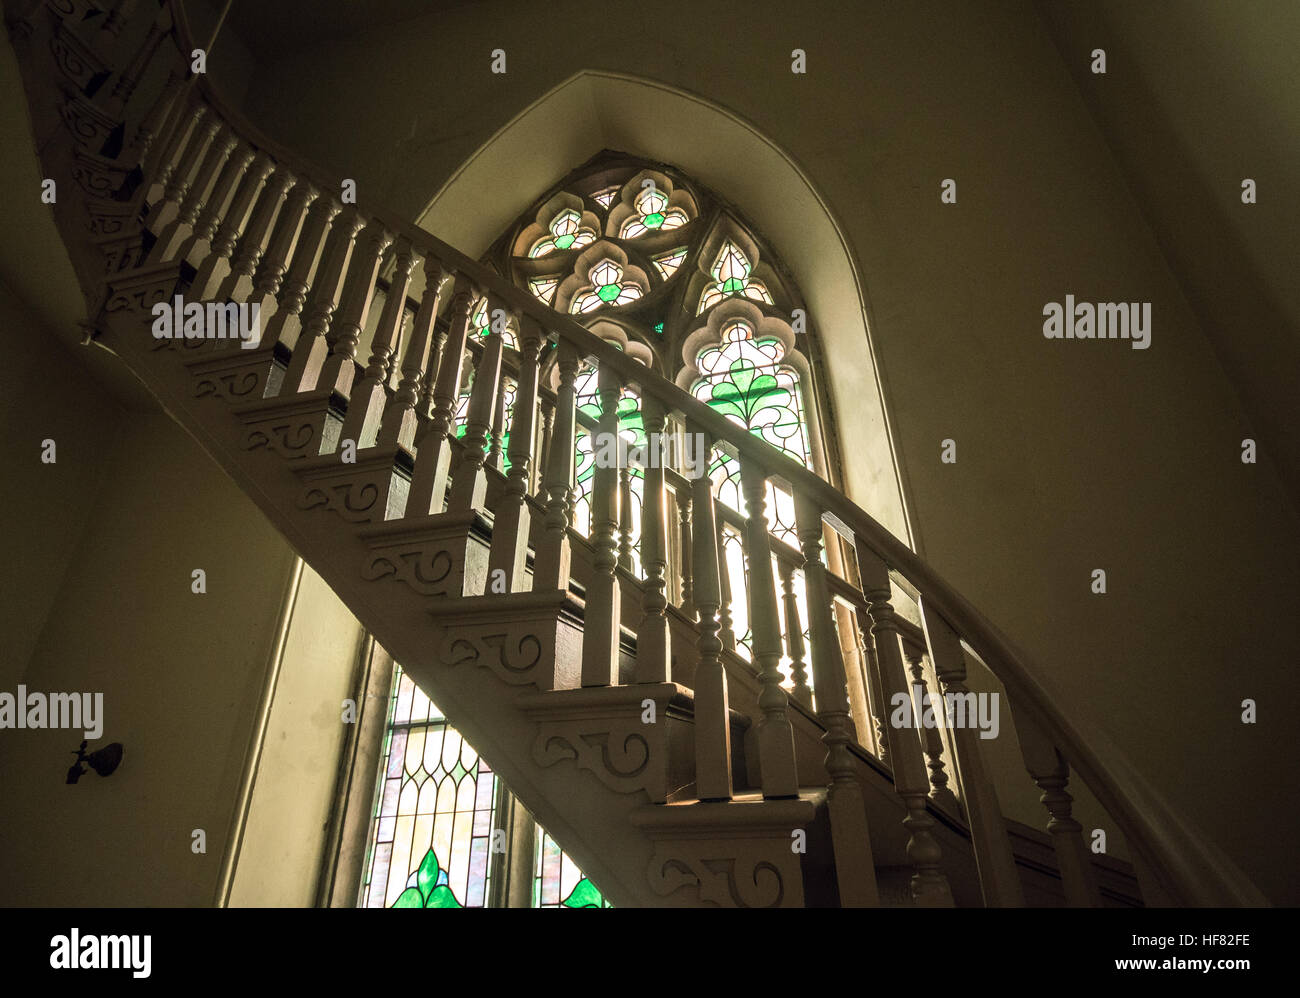 Escalera de madera ascendente en frente de un neo-gótico vidriera Foto de stock